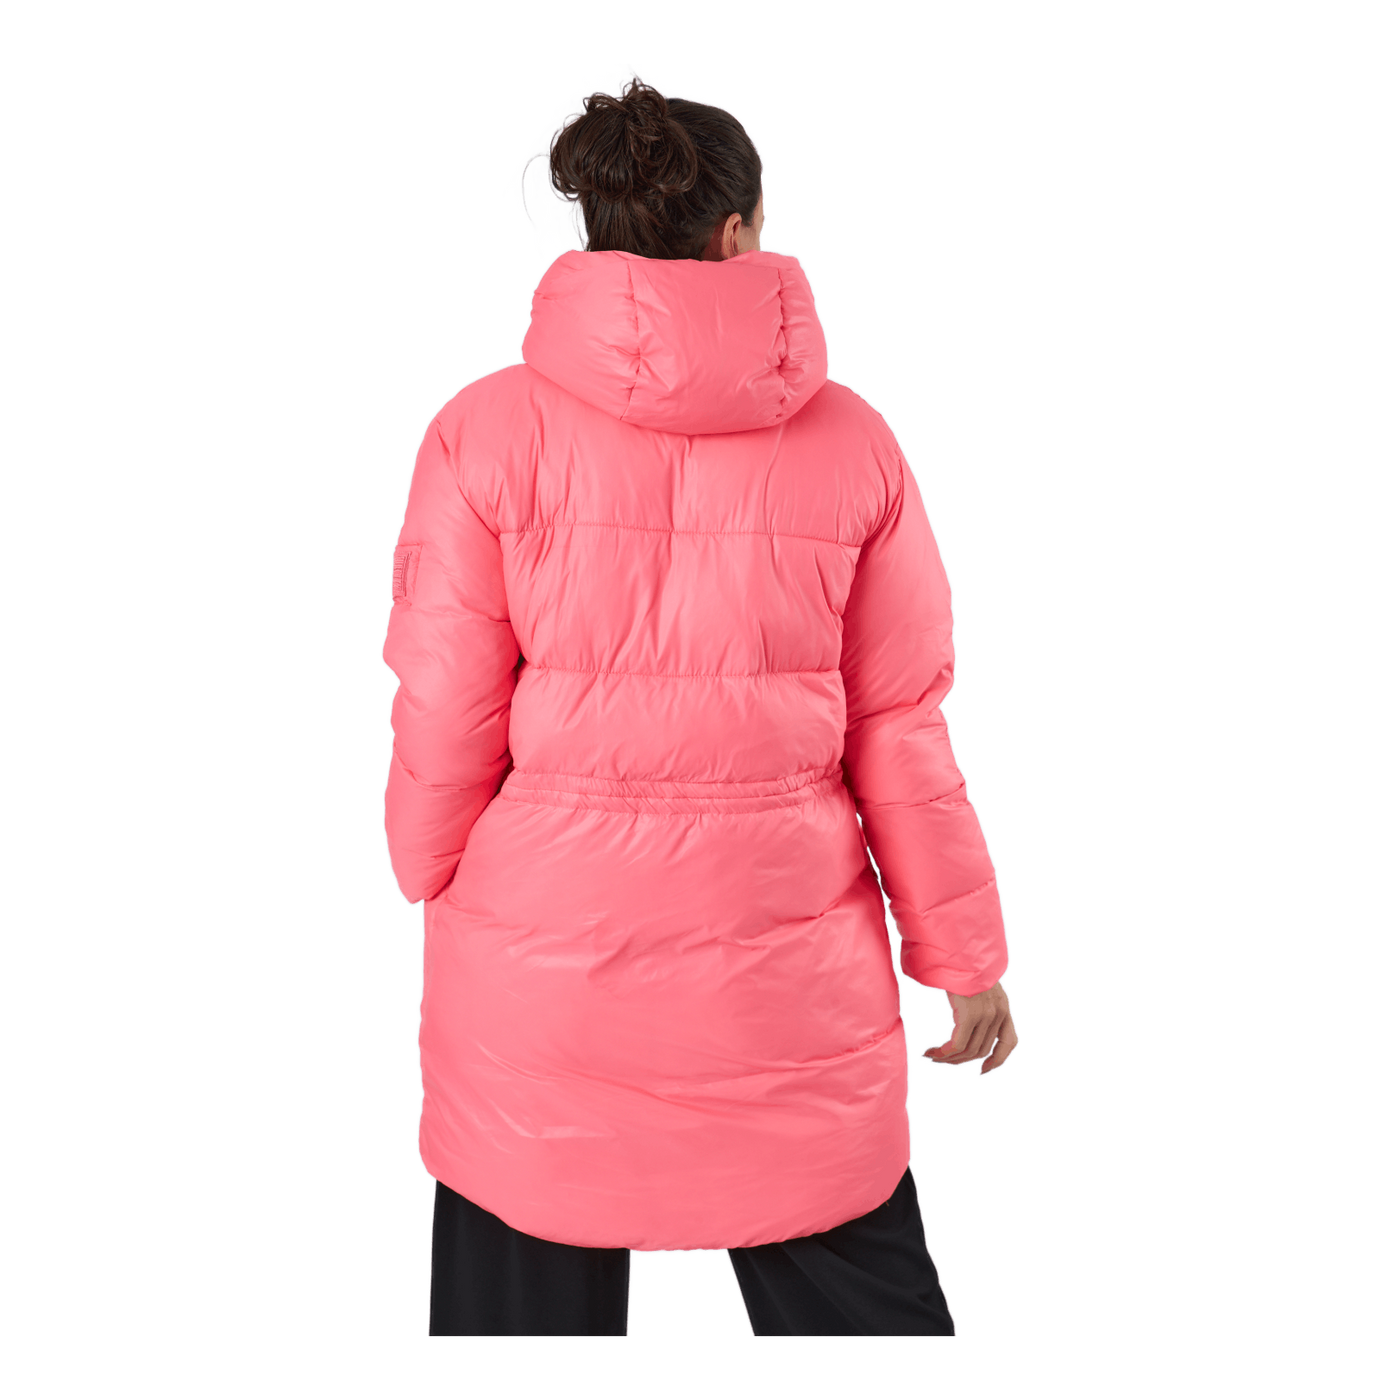 W. Mid Length Shiny Jacket Happy Pink